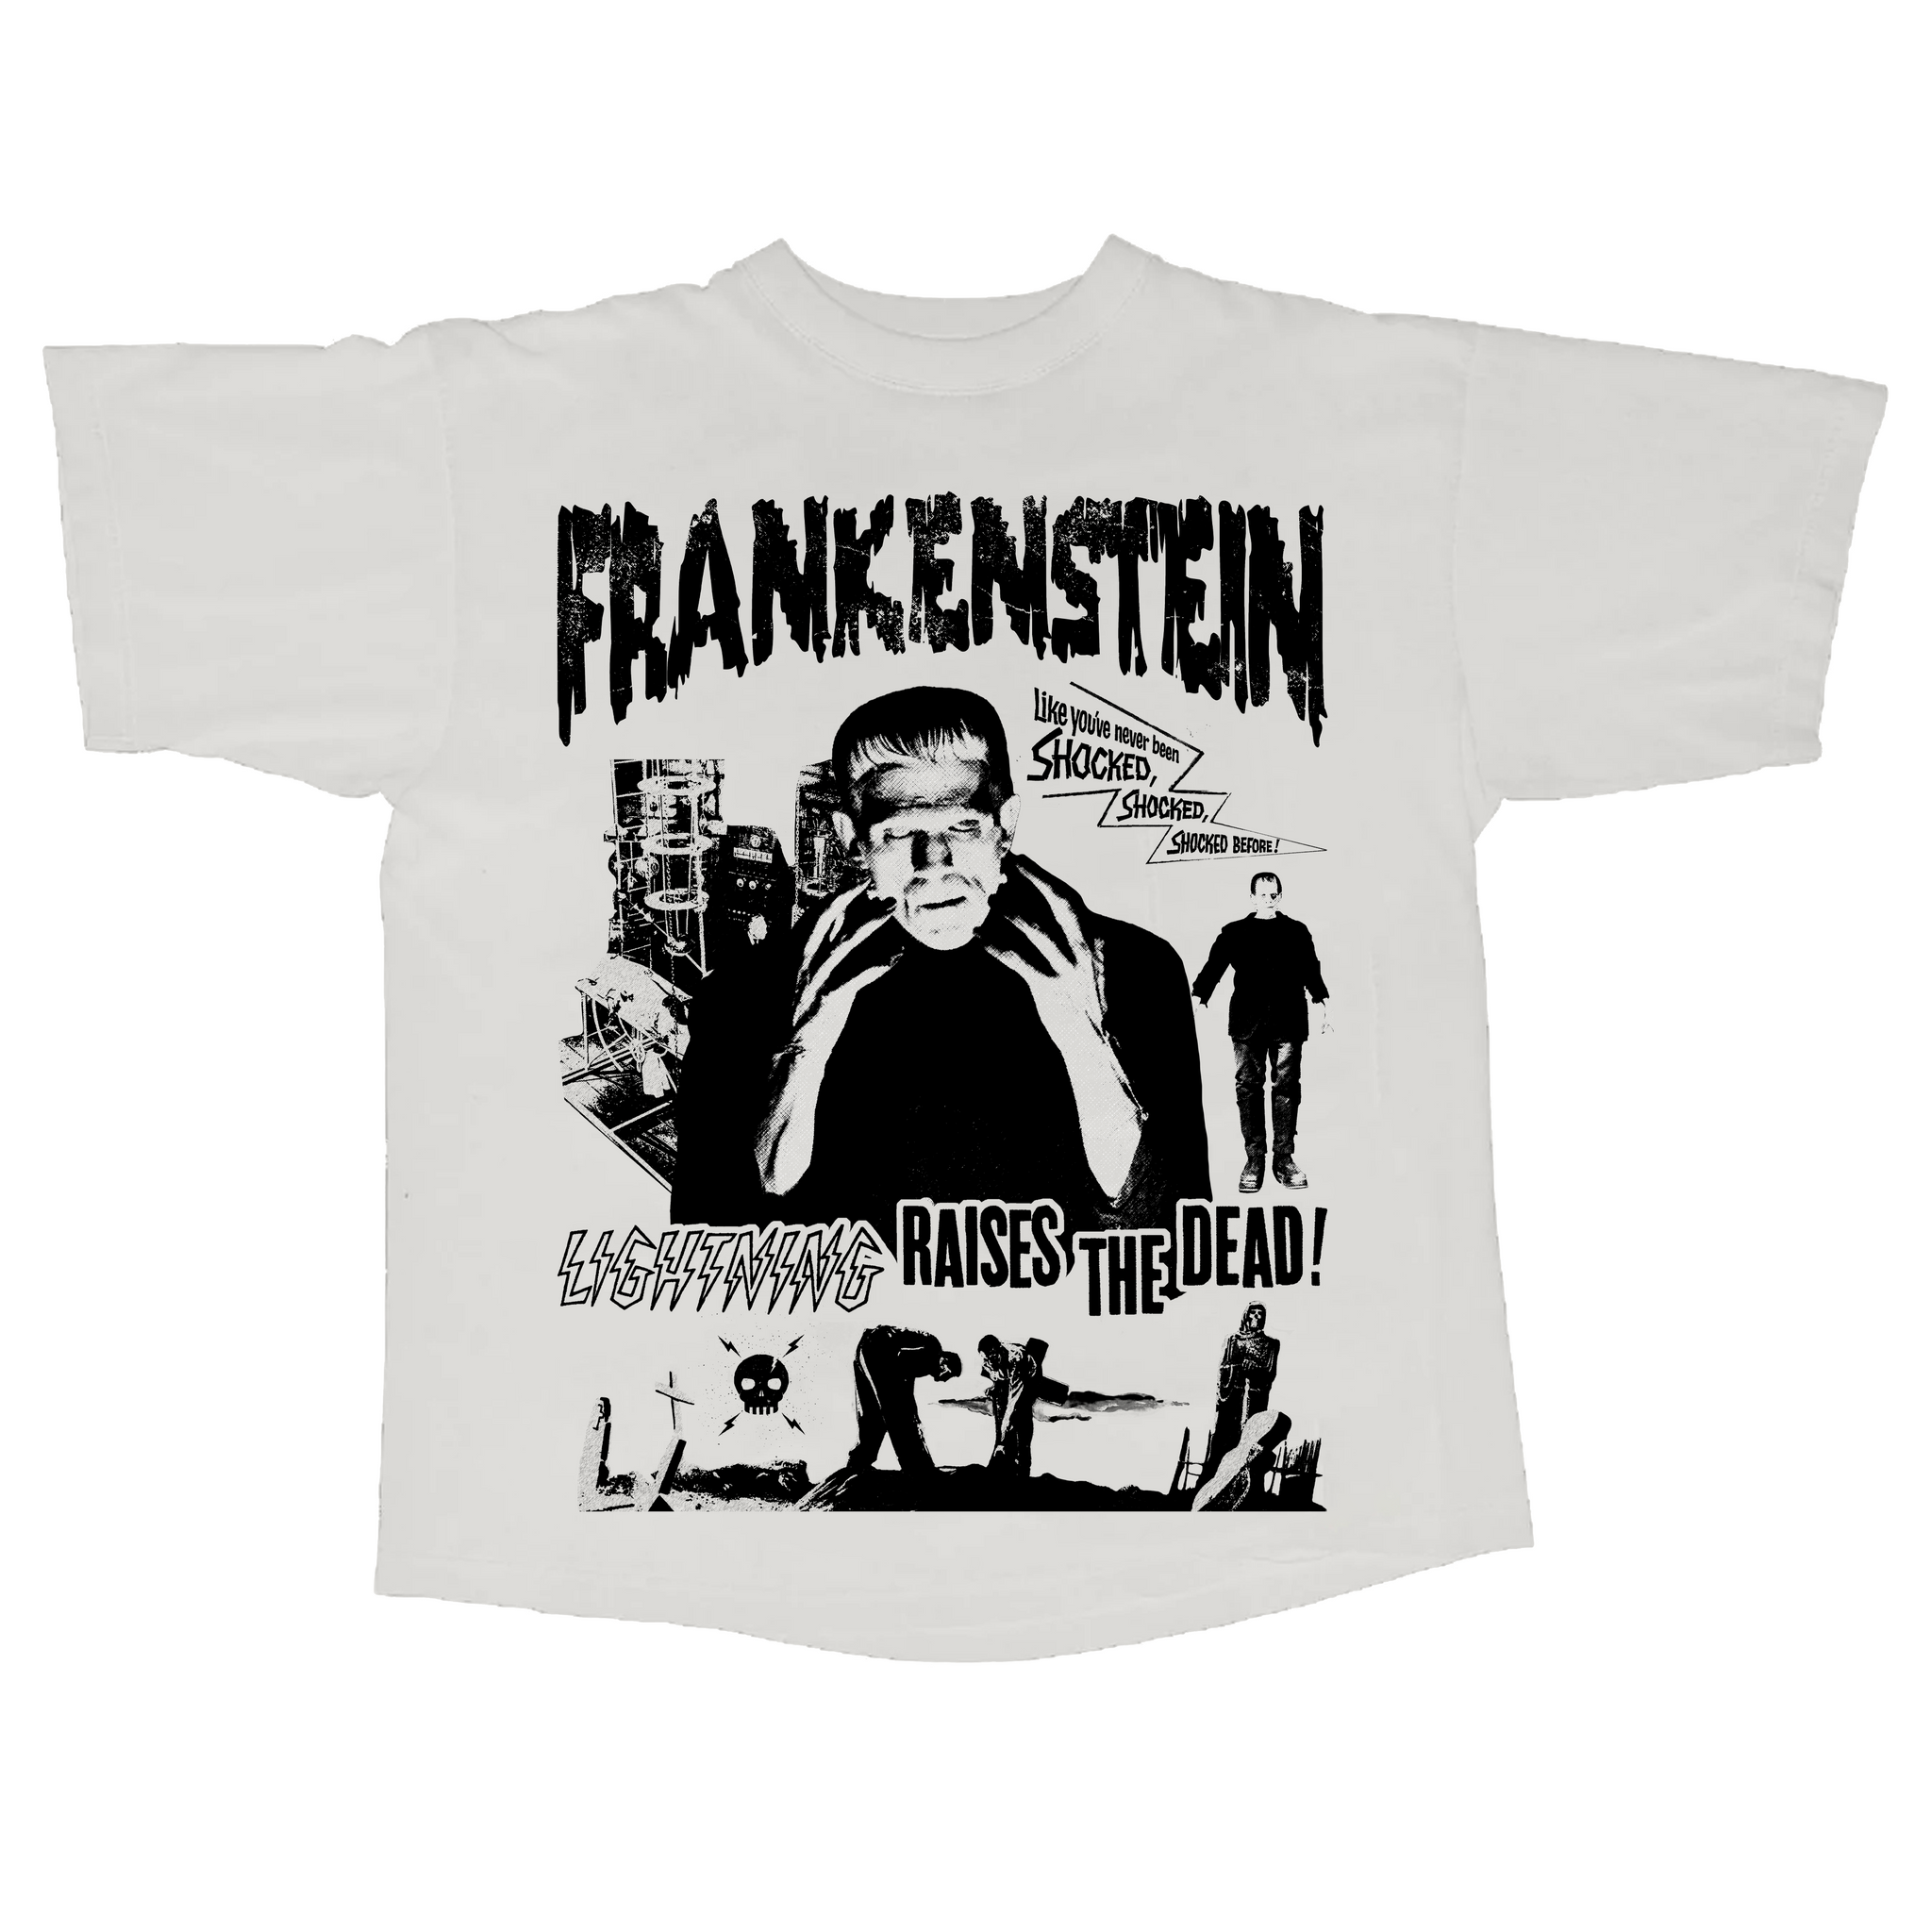 Frankenstein Tee